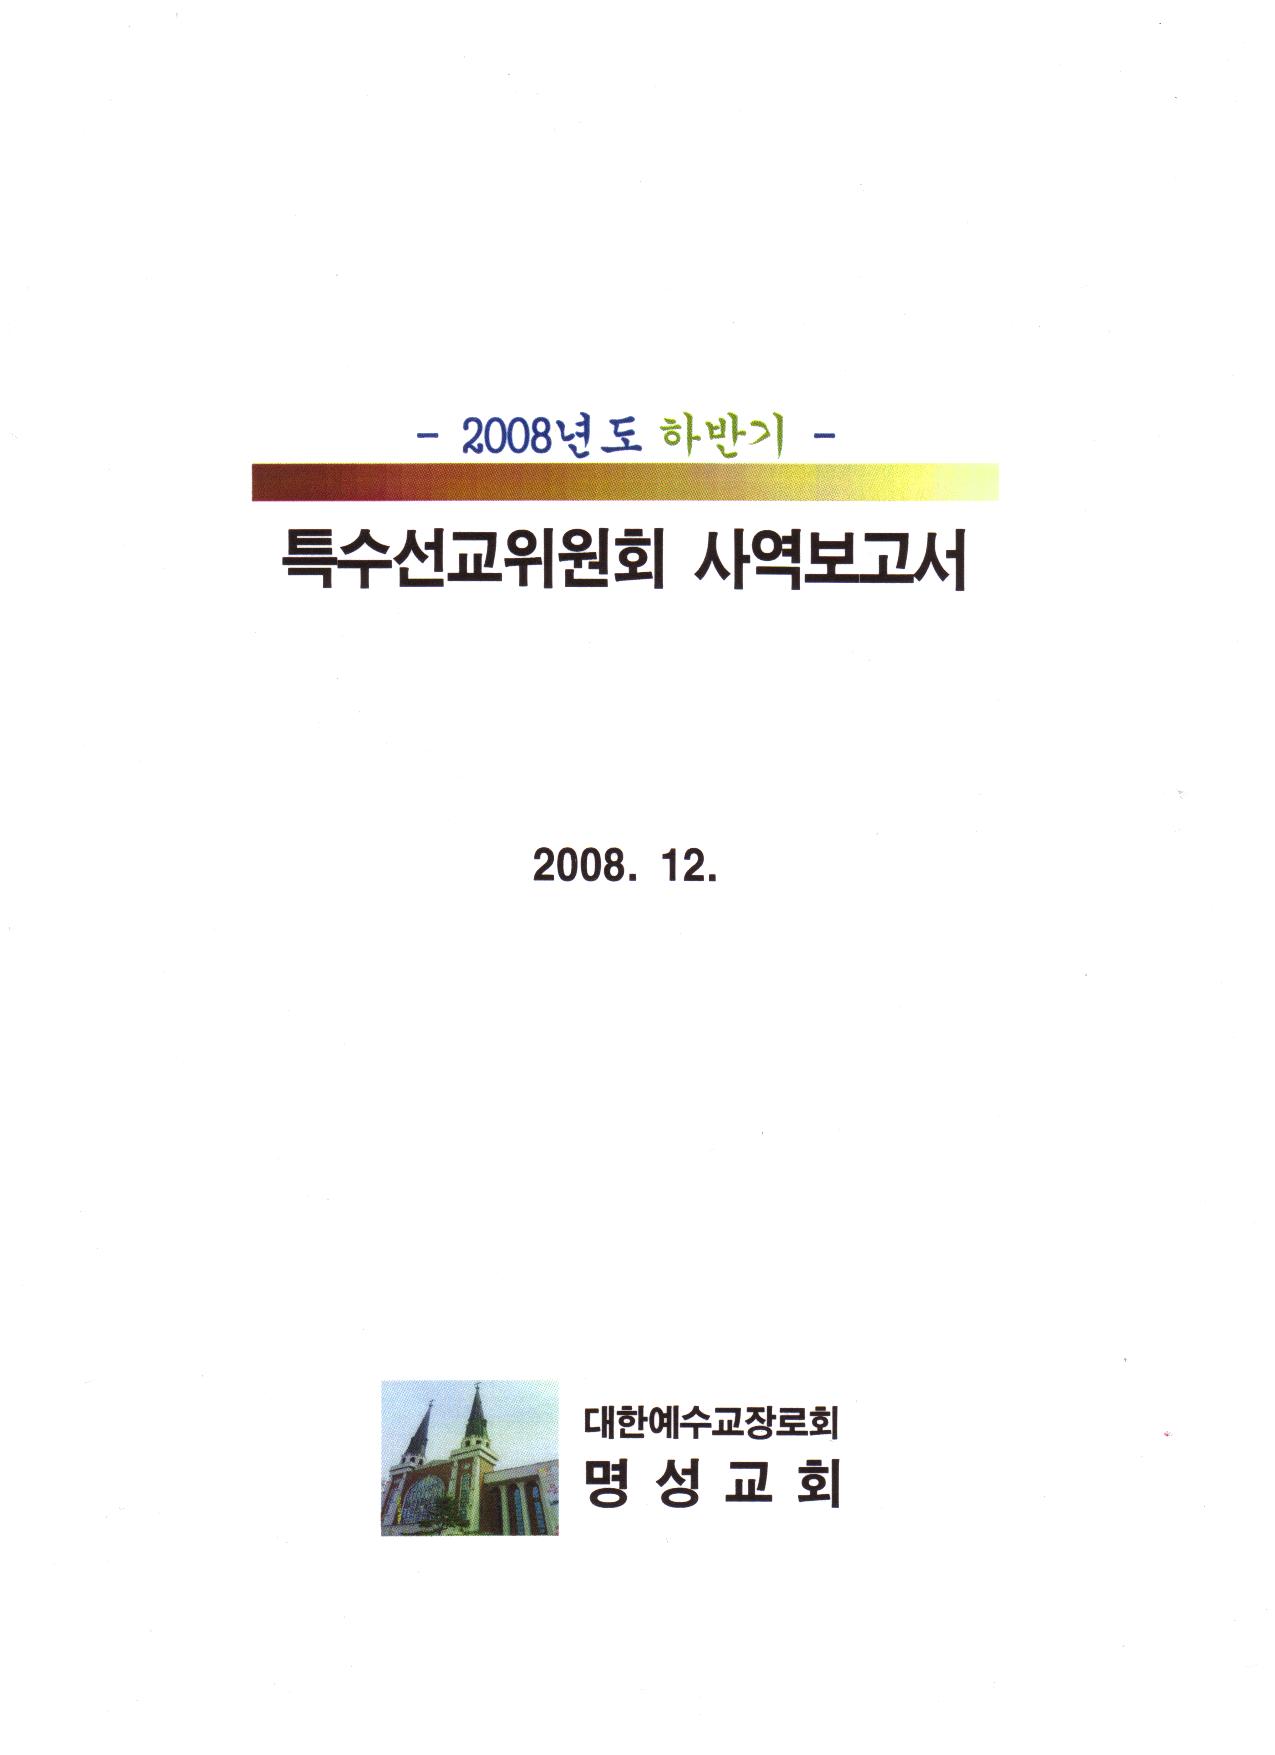 2008하반기사역보고서-1.jpg